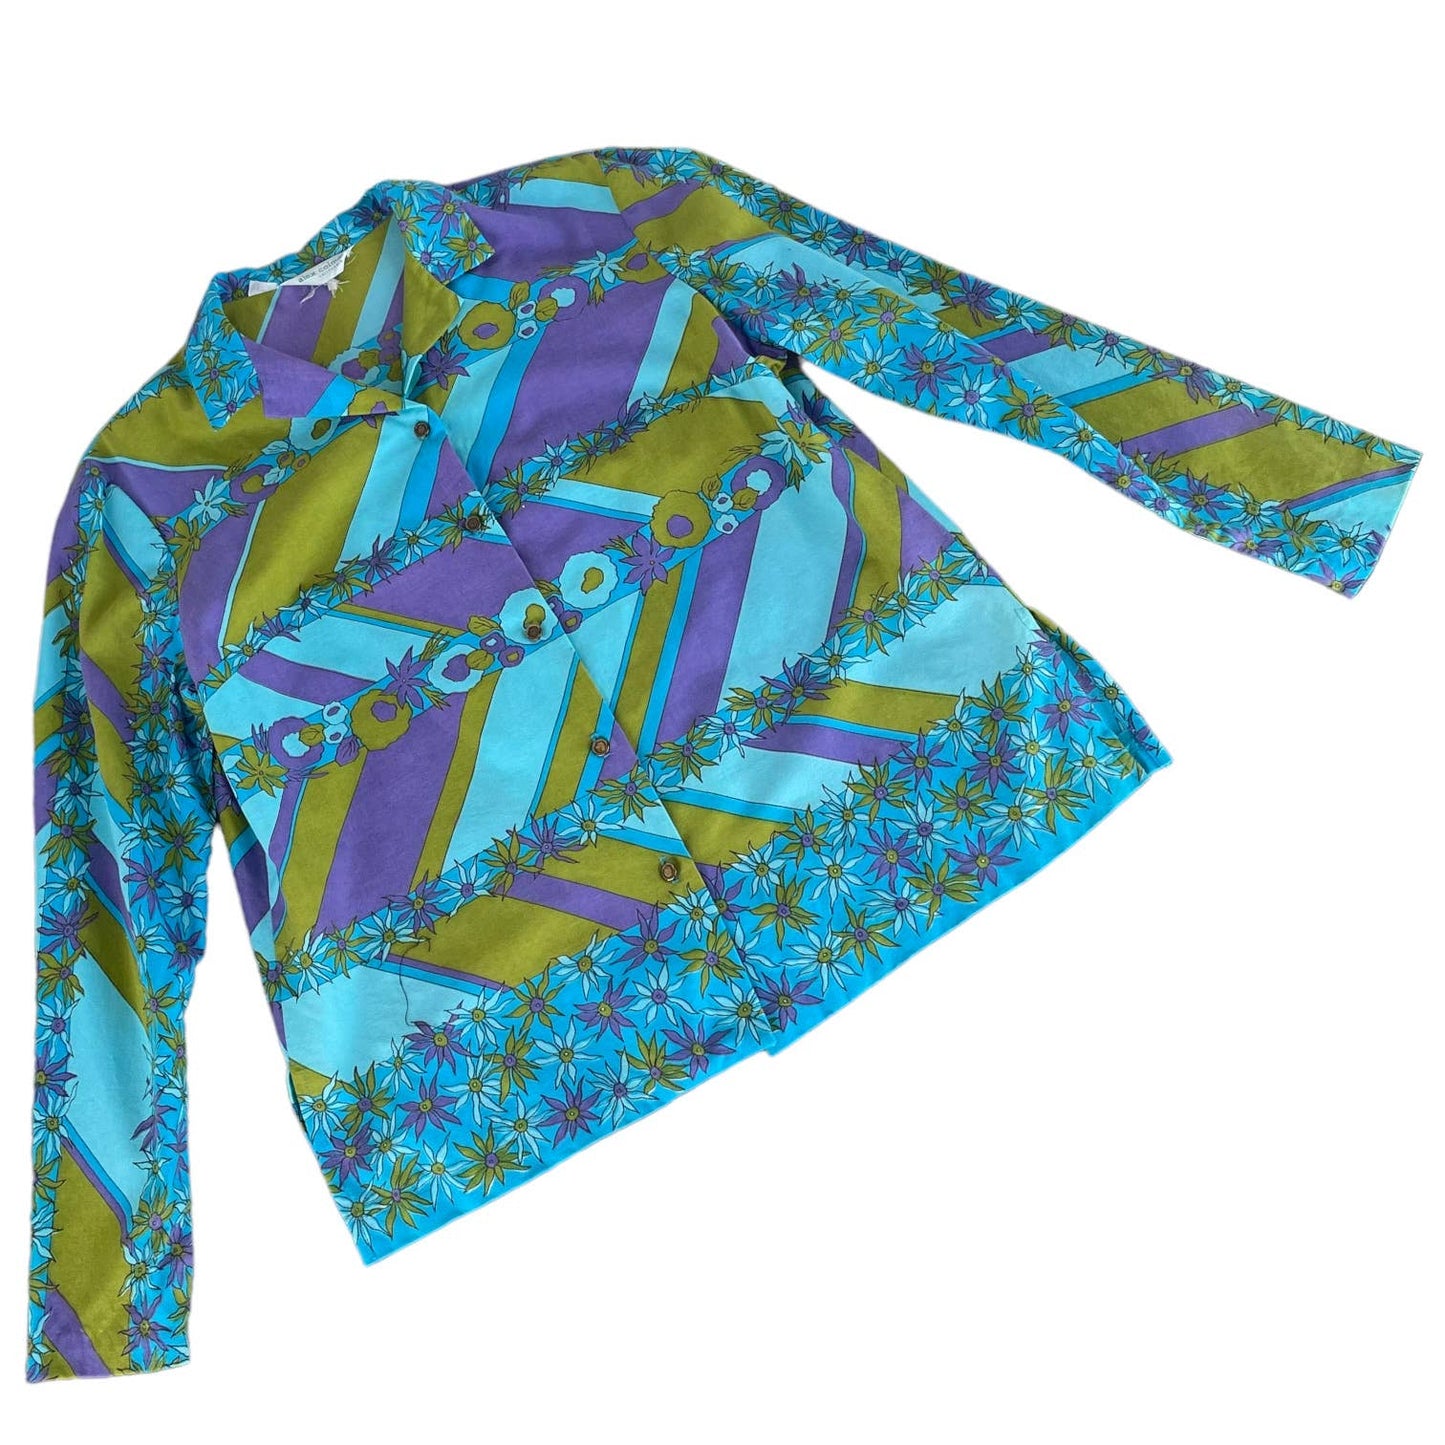 Vintage 60's Alex Colman mod psych bright floral print button front shirt M L